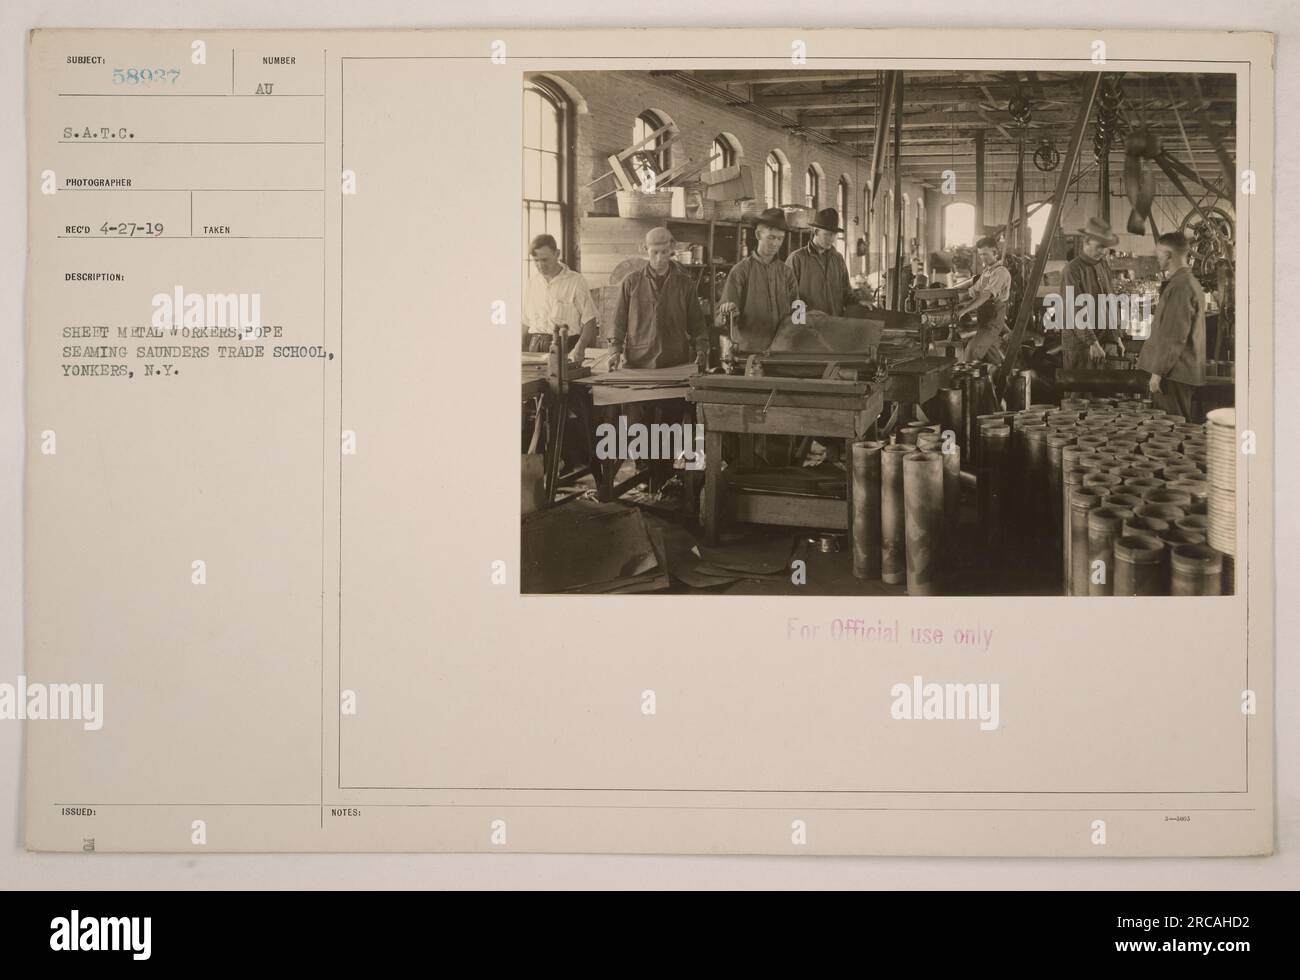 In questa immagine, i lavoratori della lamiera sono visti impegnati nella cucitura di tubi alla Saunders Trade School di Yonkers, New York, durante la prima guerra mondiale. Questa foto è stata scattata il 27 aprile 1919 ed è etichettata "58937 S.A.T.C.". La descrizione specifica che è esclusivamente per uso ufficiale. Foto Stock